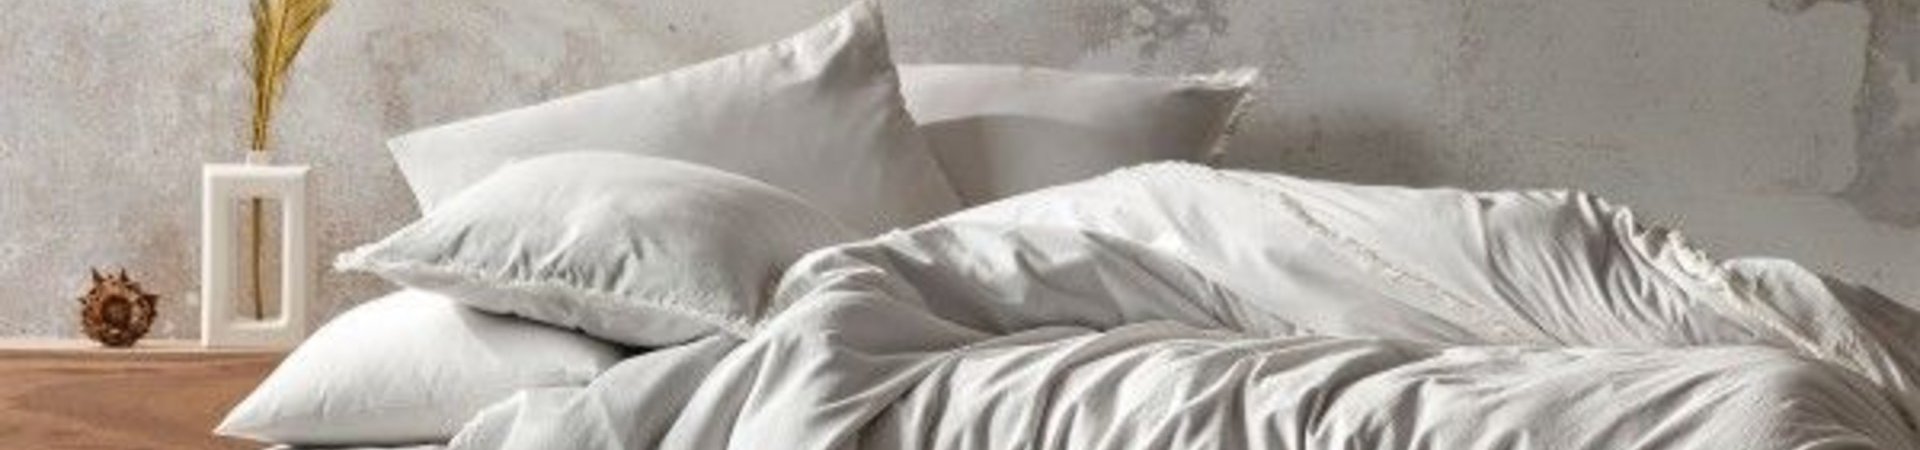 Strokovni nasveti, kako oprati belo posteljnino